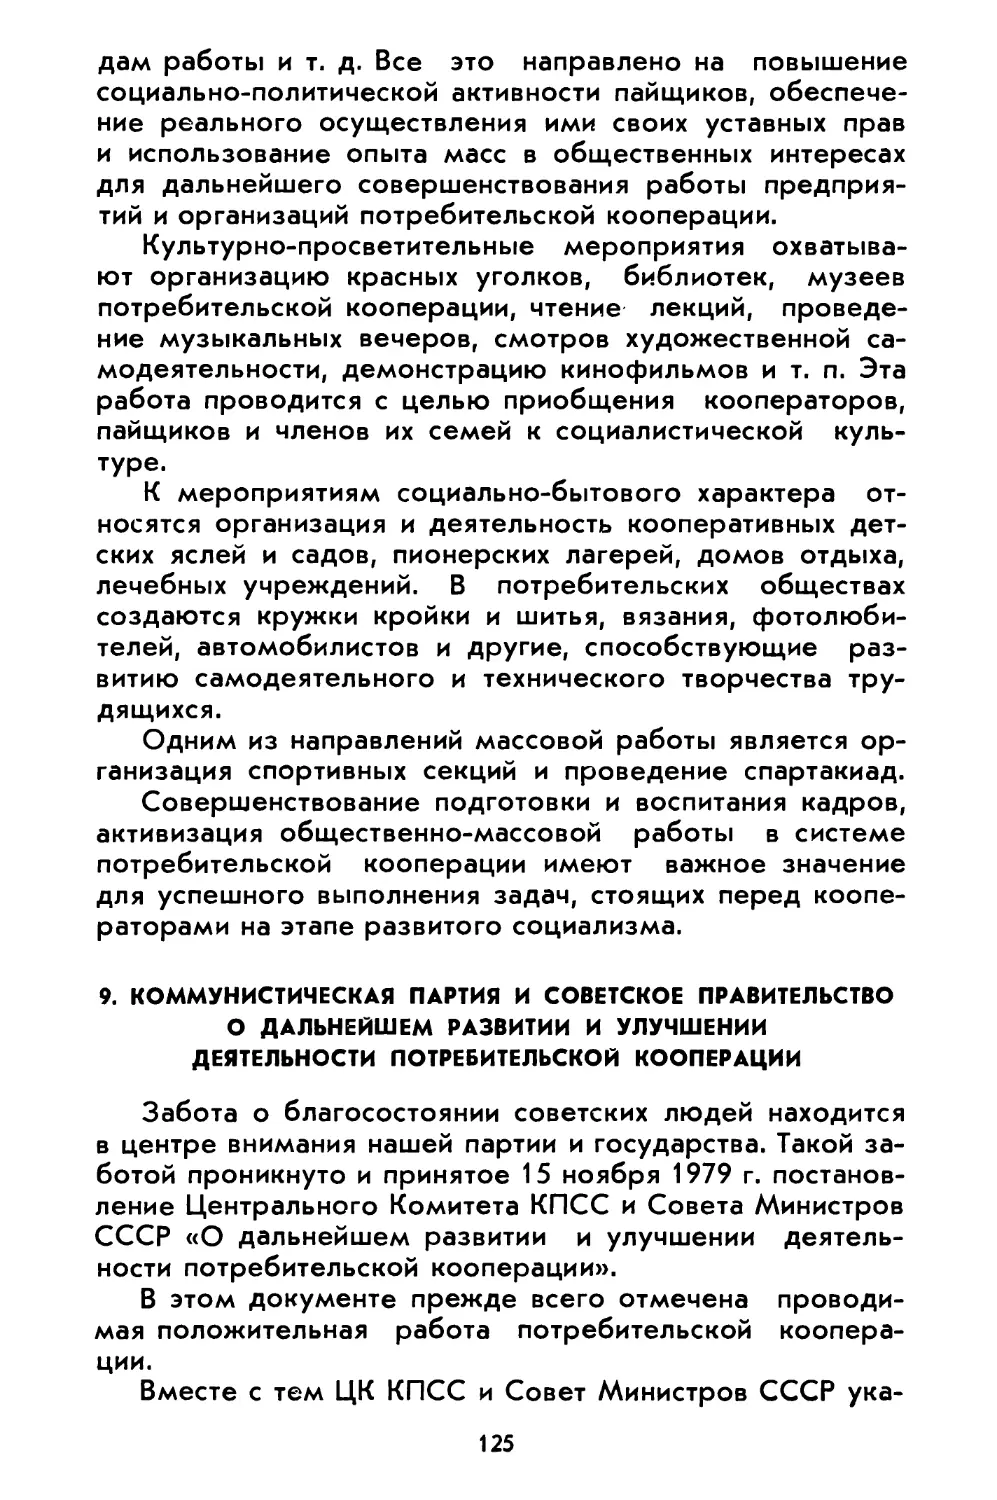 9. Коммунистическая партия и Советское правительство о дальнейшем развитии и улучшении деятельности потребительской кооперации